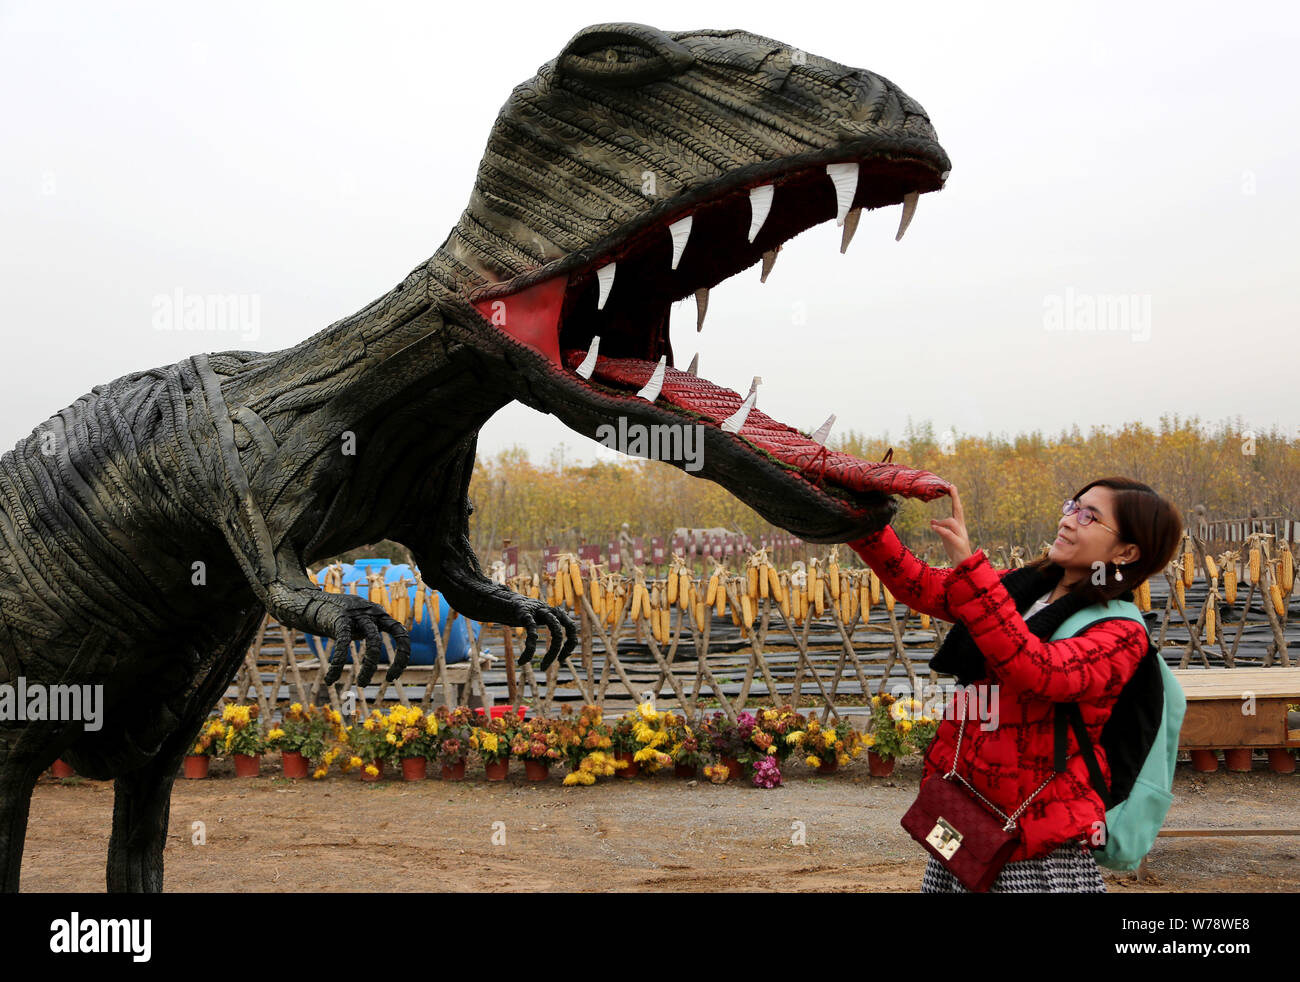 Un visiteur interagit avec un pneu en forme de tyrannosaure sculpture à un parc de sculptures des pneus à Zaozhuang City, Shandong province de Chine orientale, le 19 novembre Banque D'Images